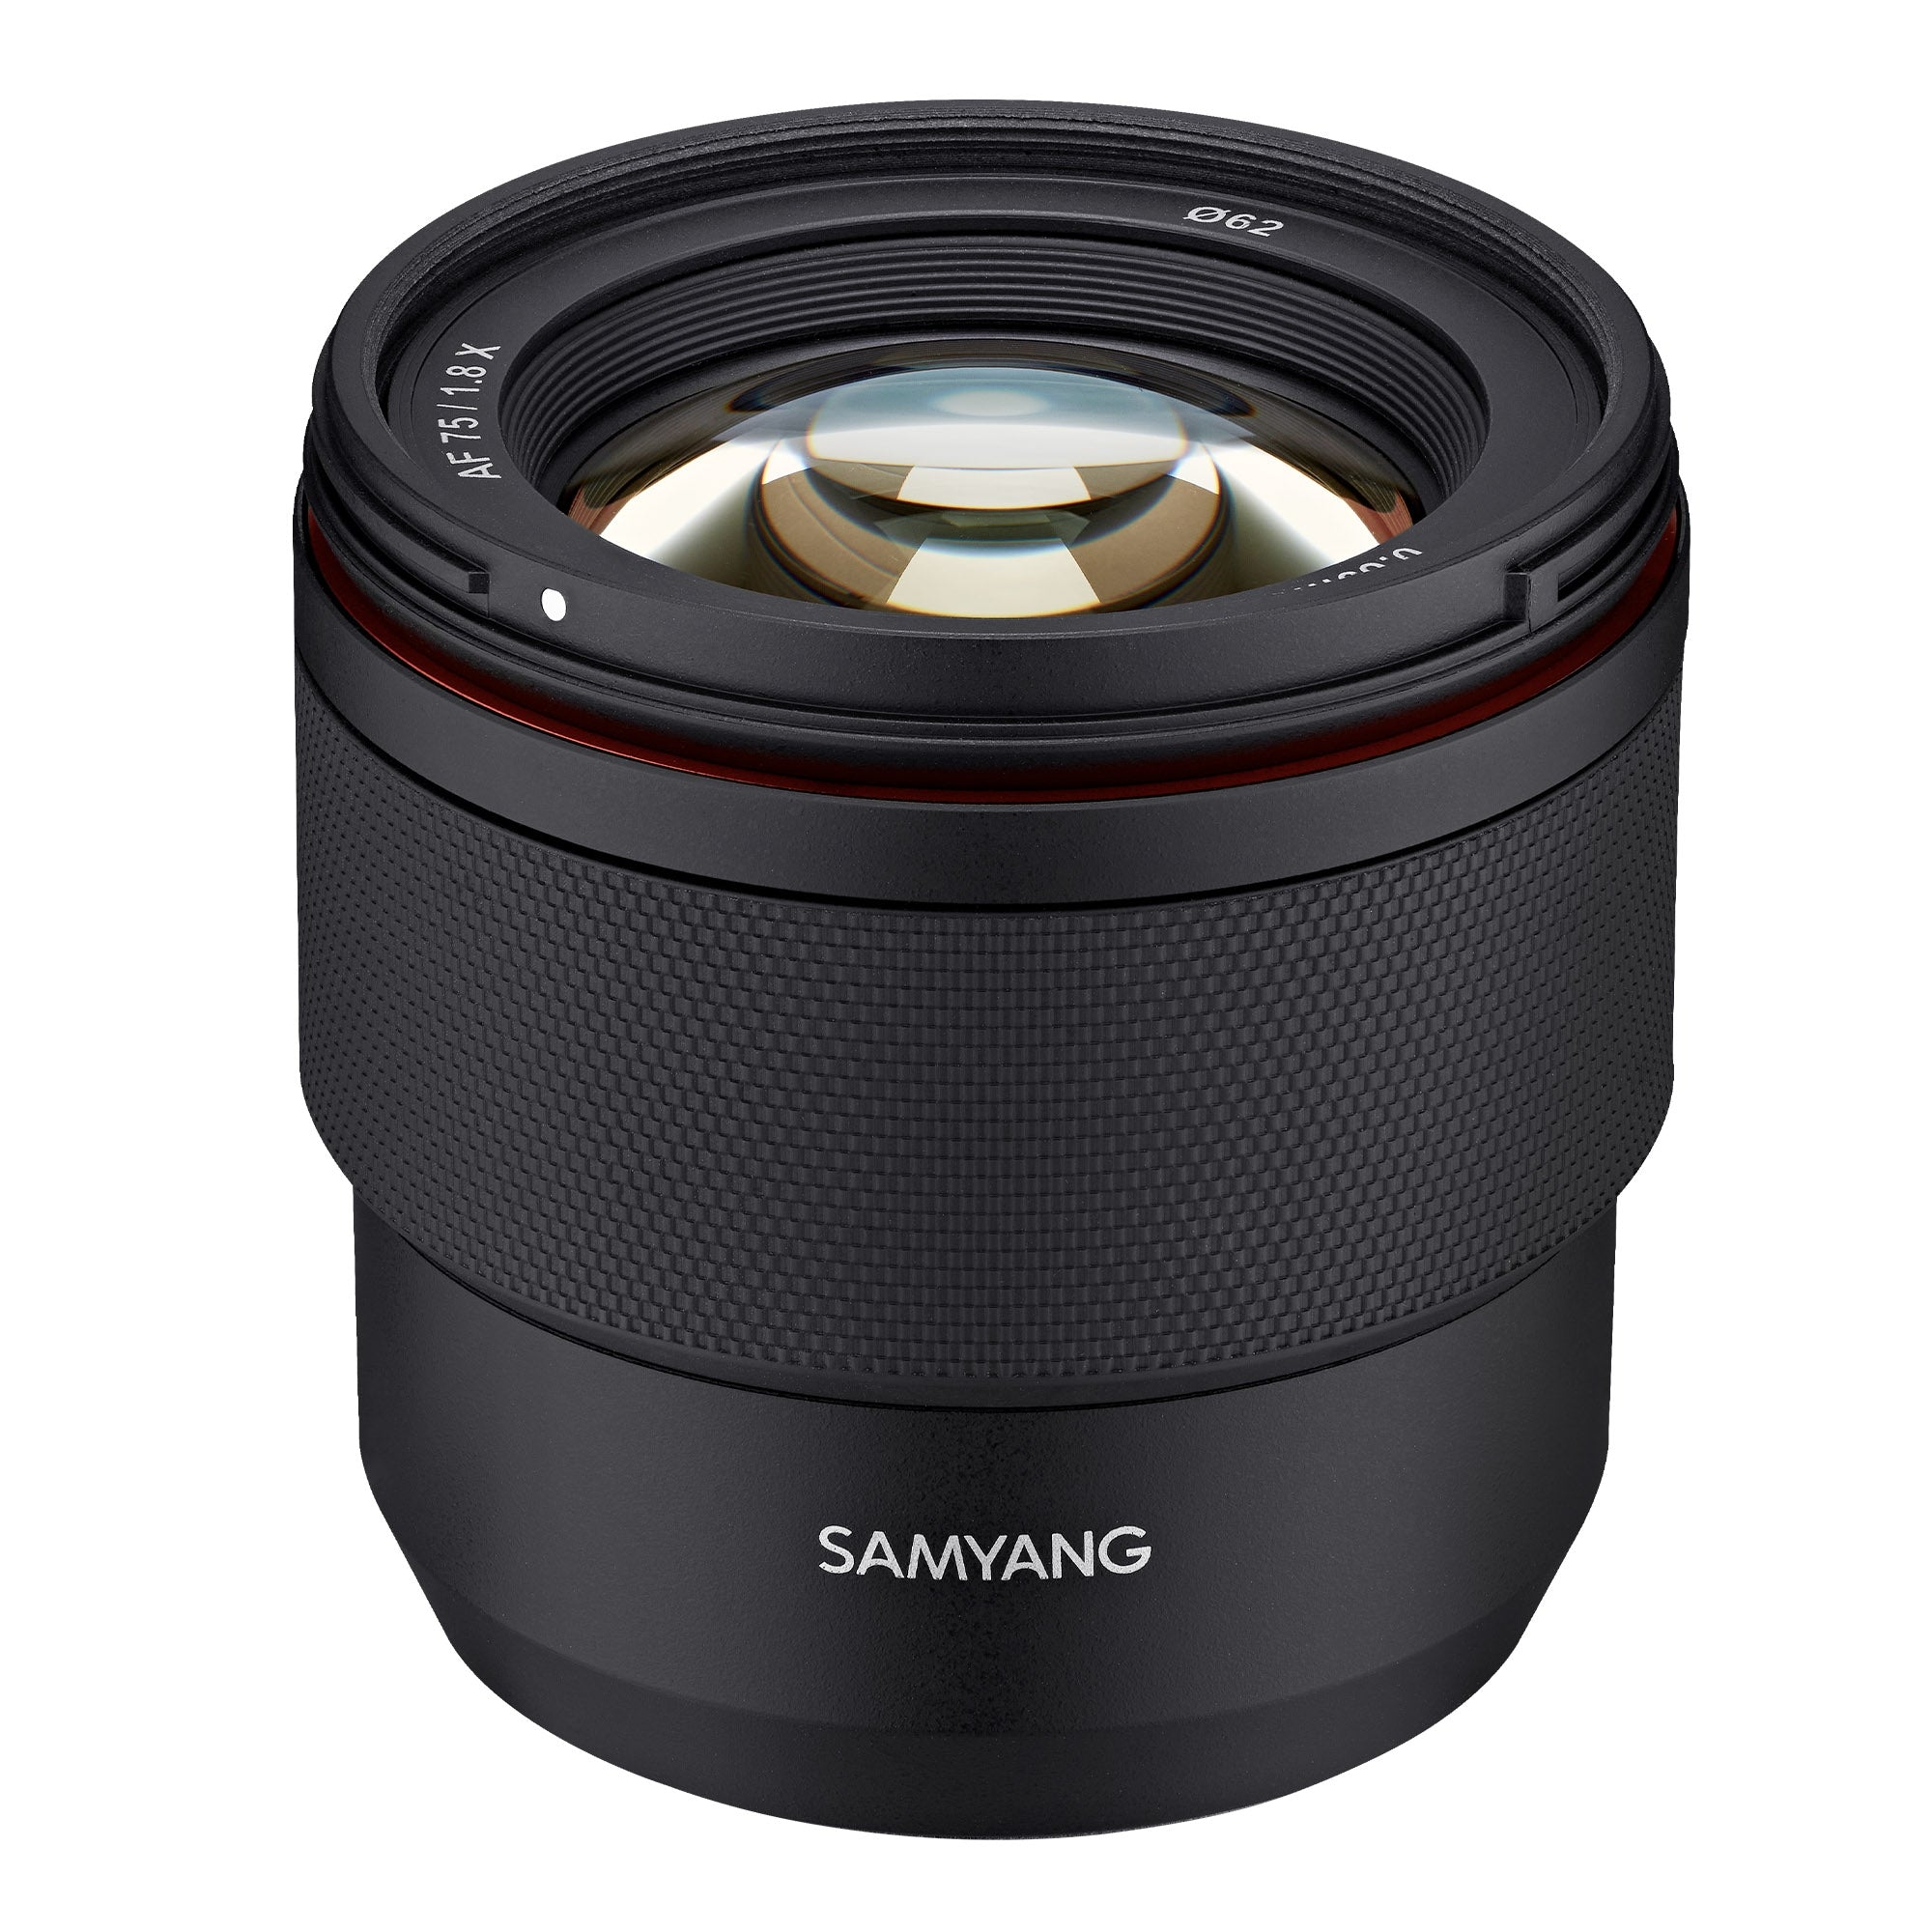 Samyang AF 75mm F1.8 Sony FE Full frame Lens - Black